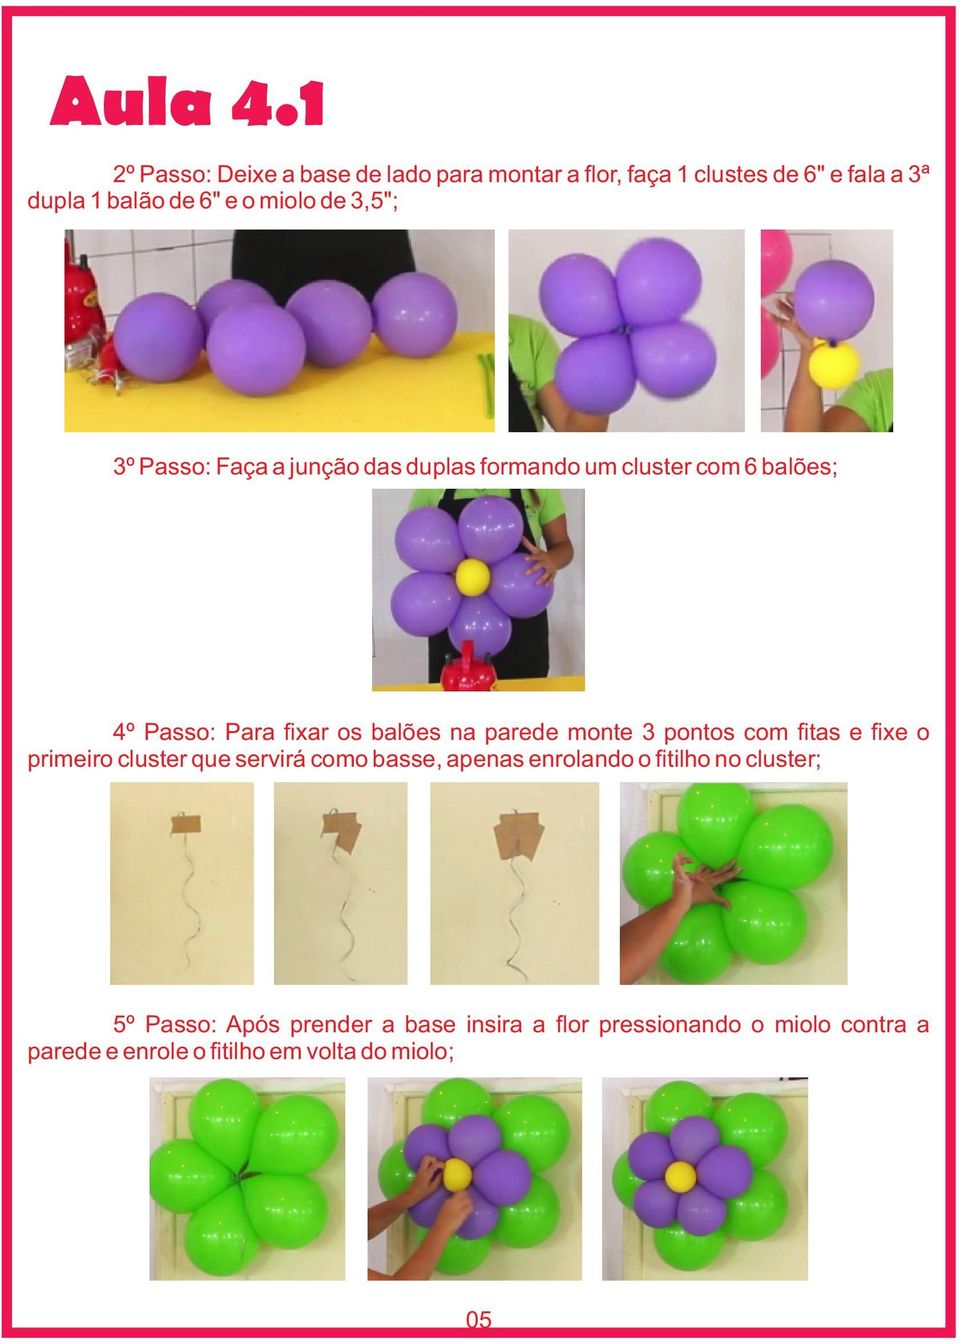 3,5"; 3º Passo: Faça a junção das duplas formando um cluster com 6 balões; 4º Passo: Para fixar os balões na parede